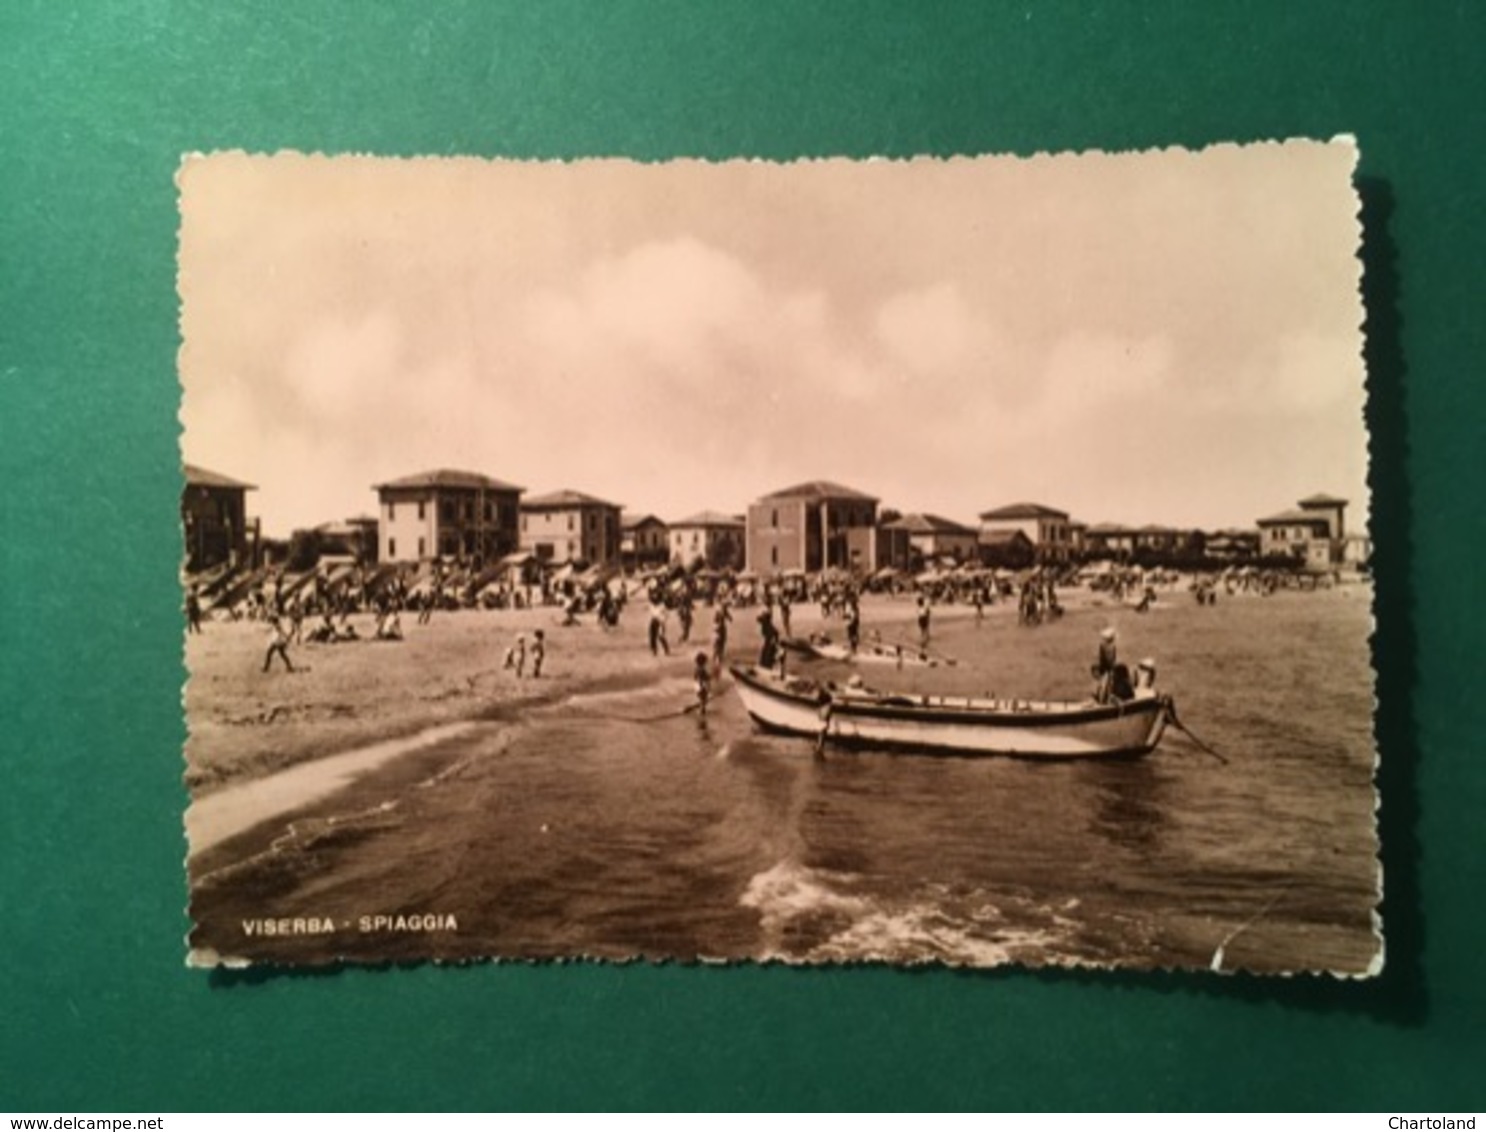 Cartolina Saluti Da Viserba - Spiaggia - 1950 - Rimini